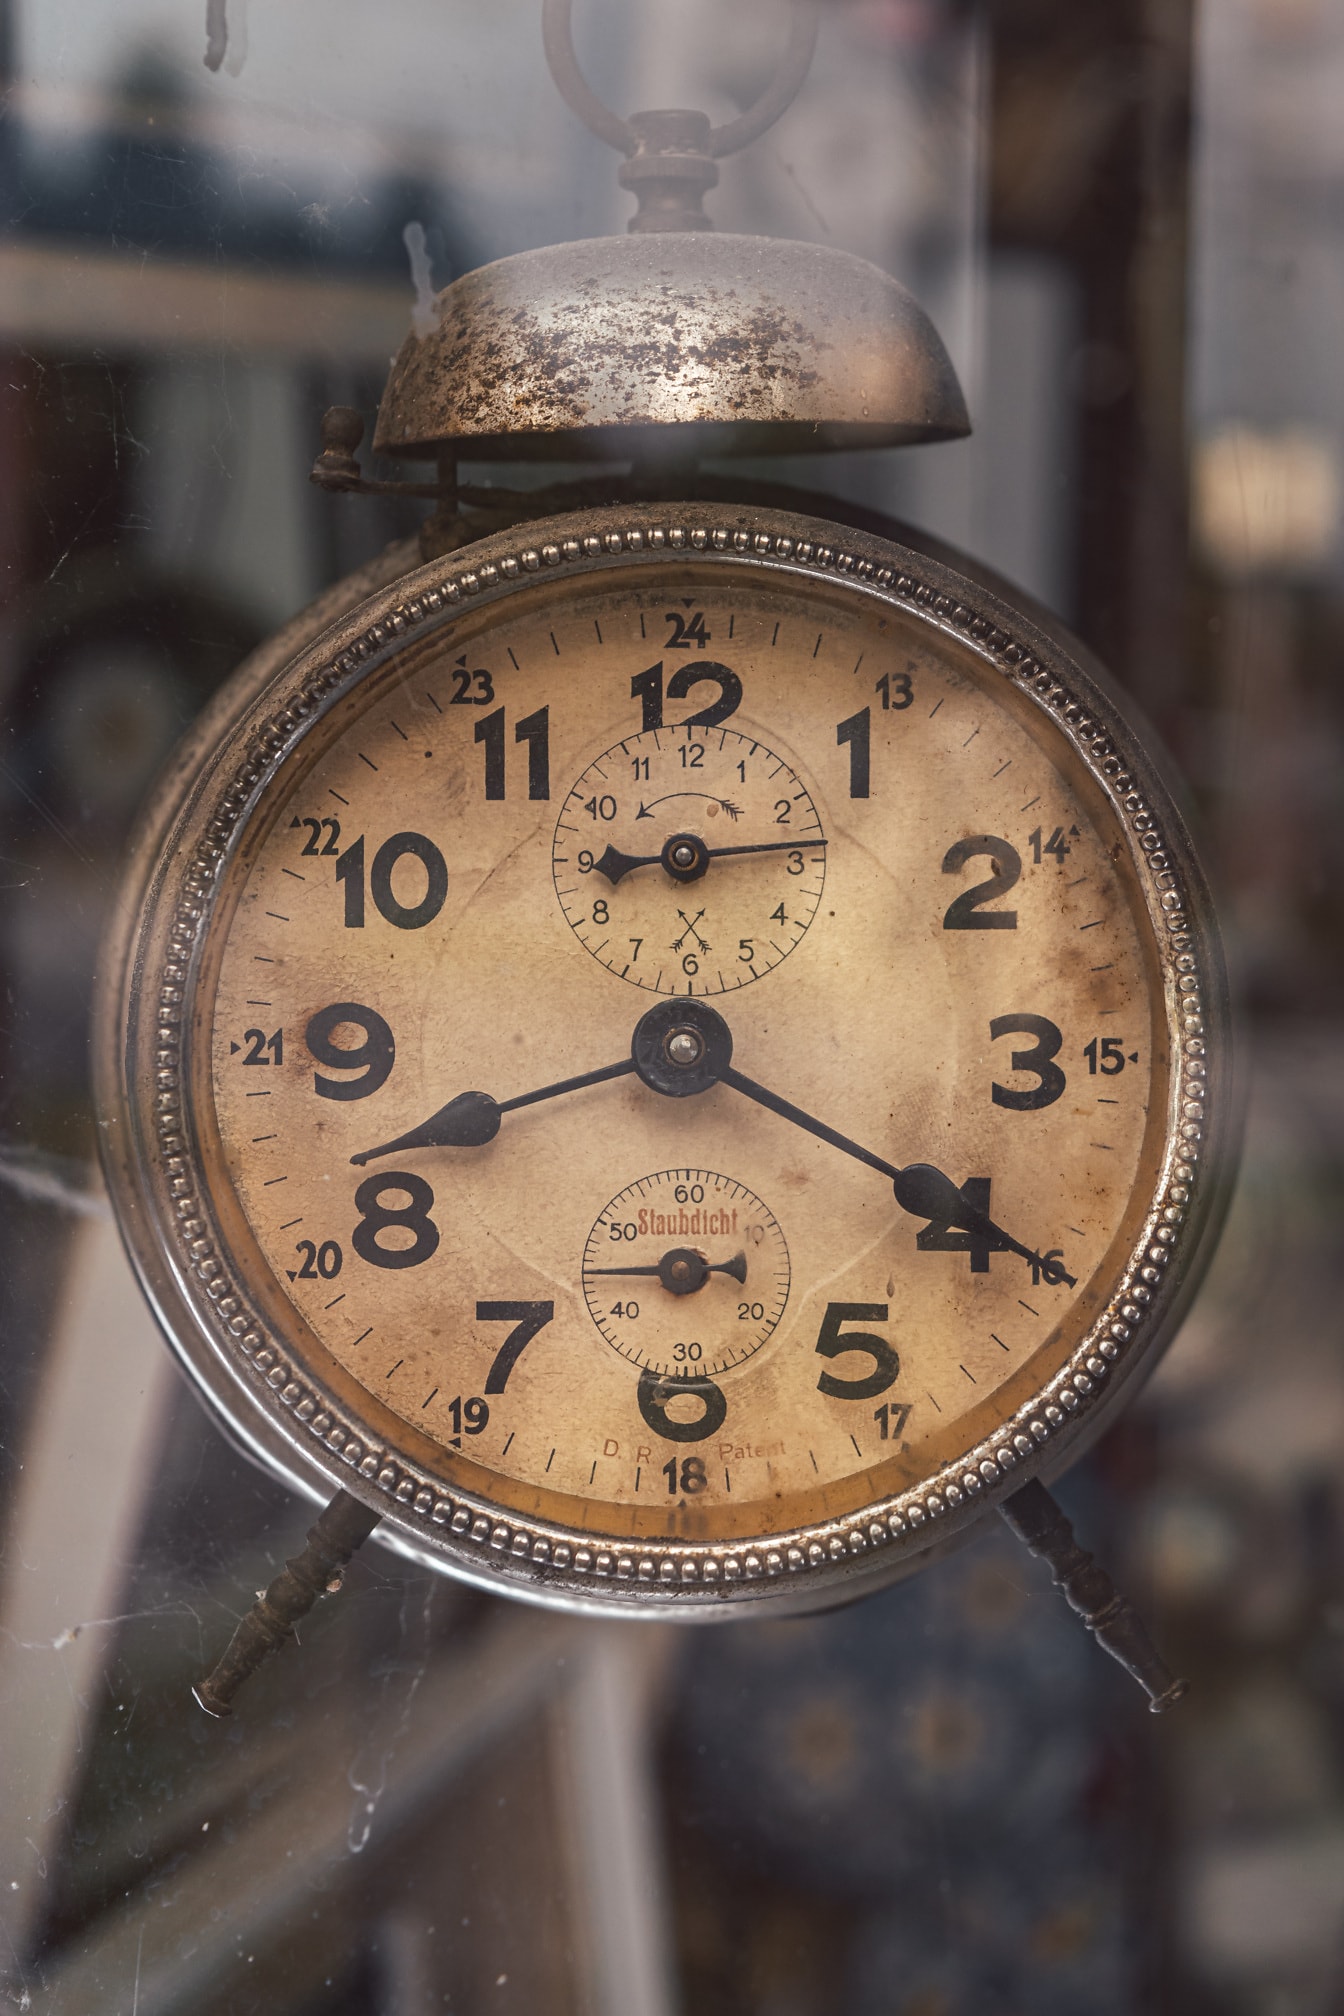 Reloj despertador antiguo vintage Staubdicht reloj analógico primer plano